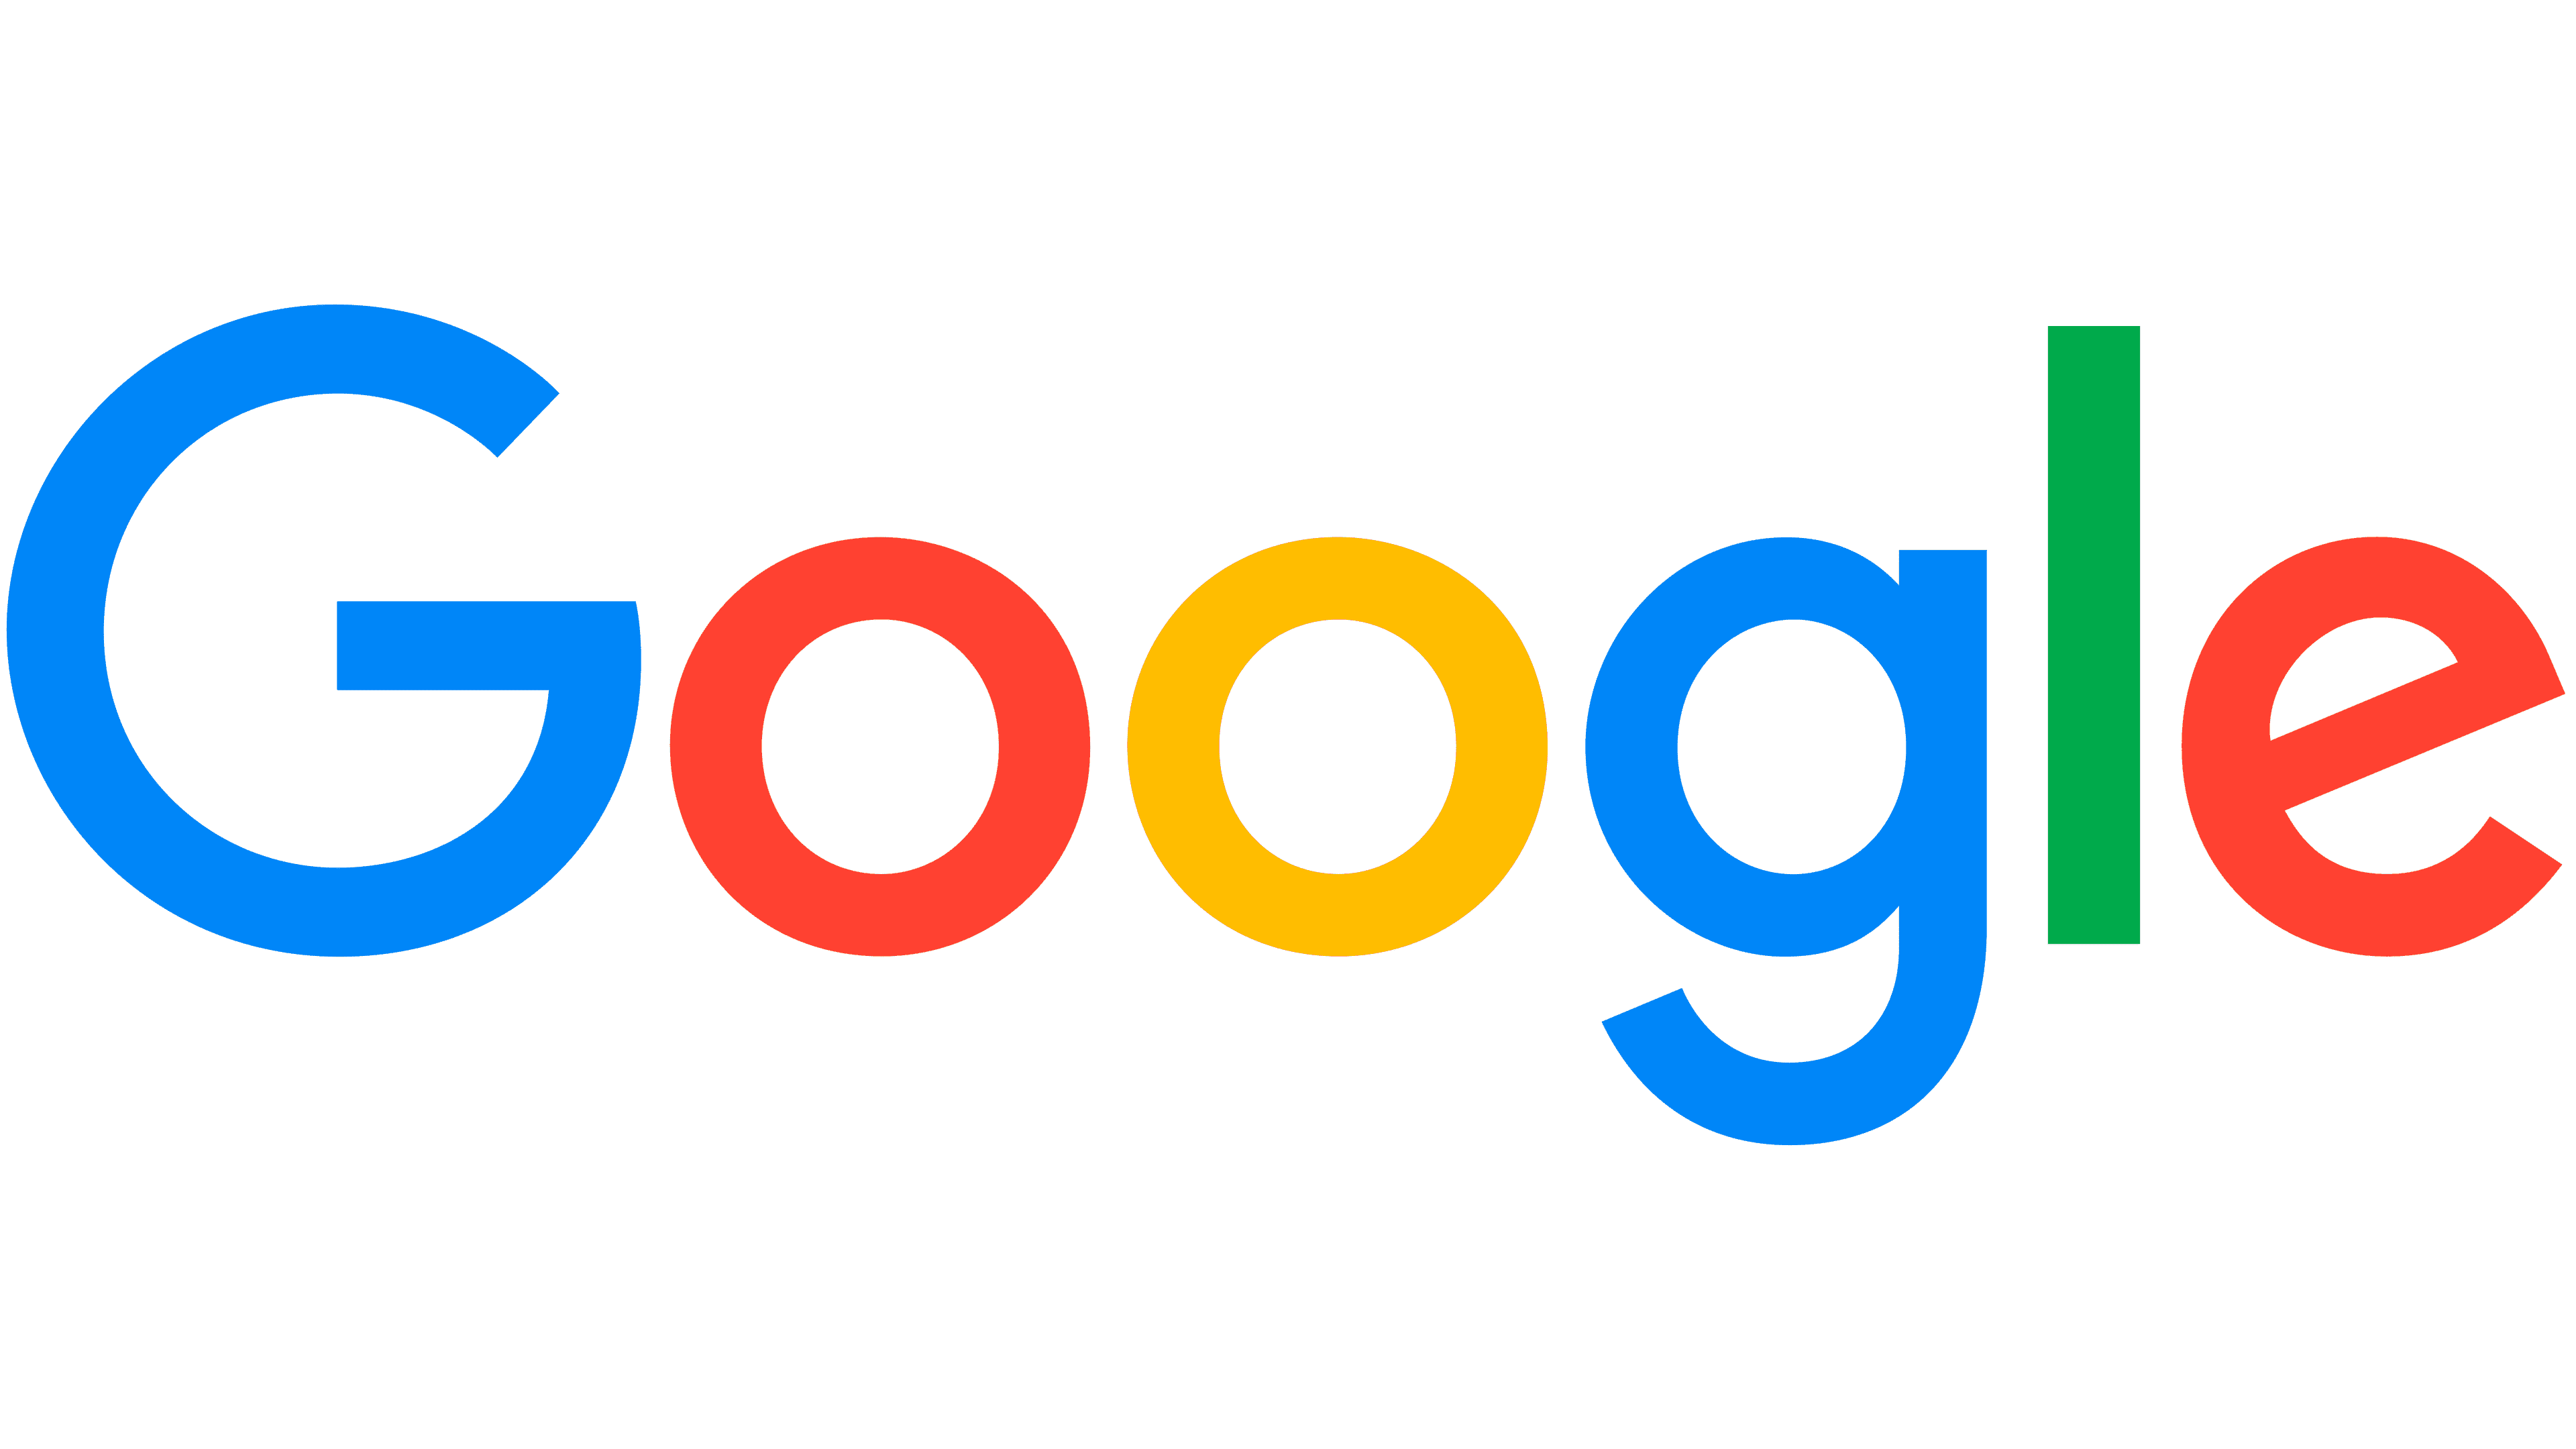 Estrategias clave para impulsar el crecimiento empresarial - logo Google